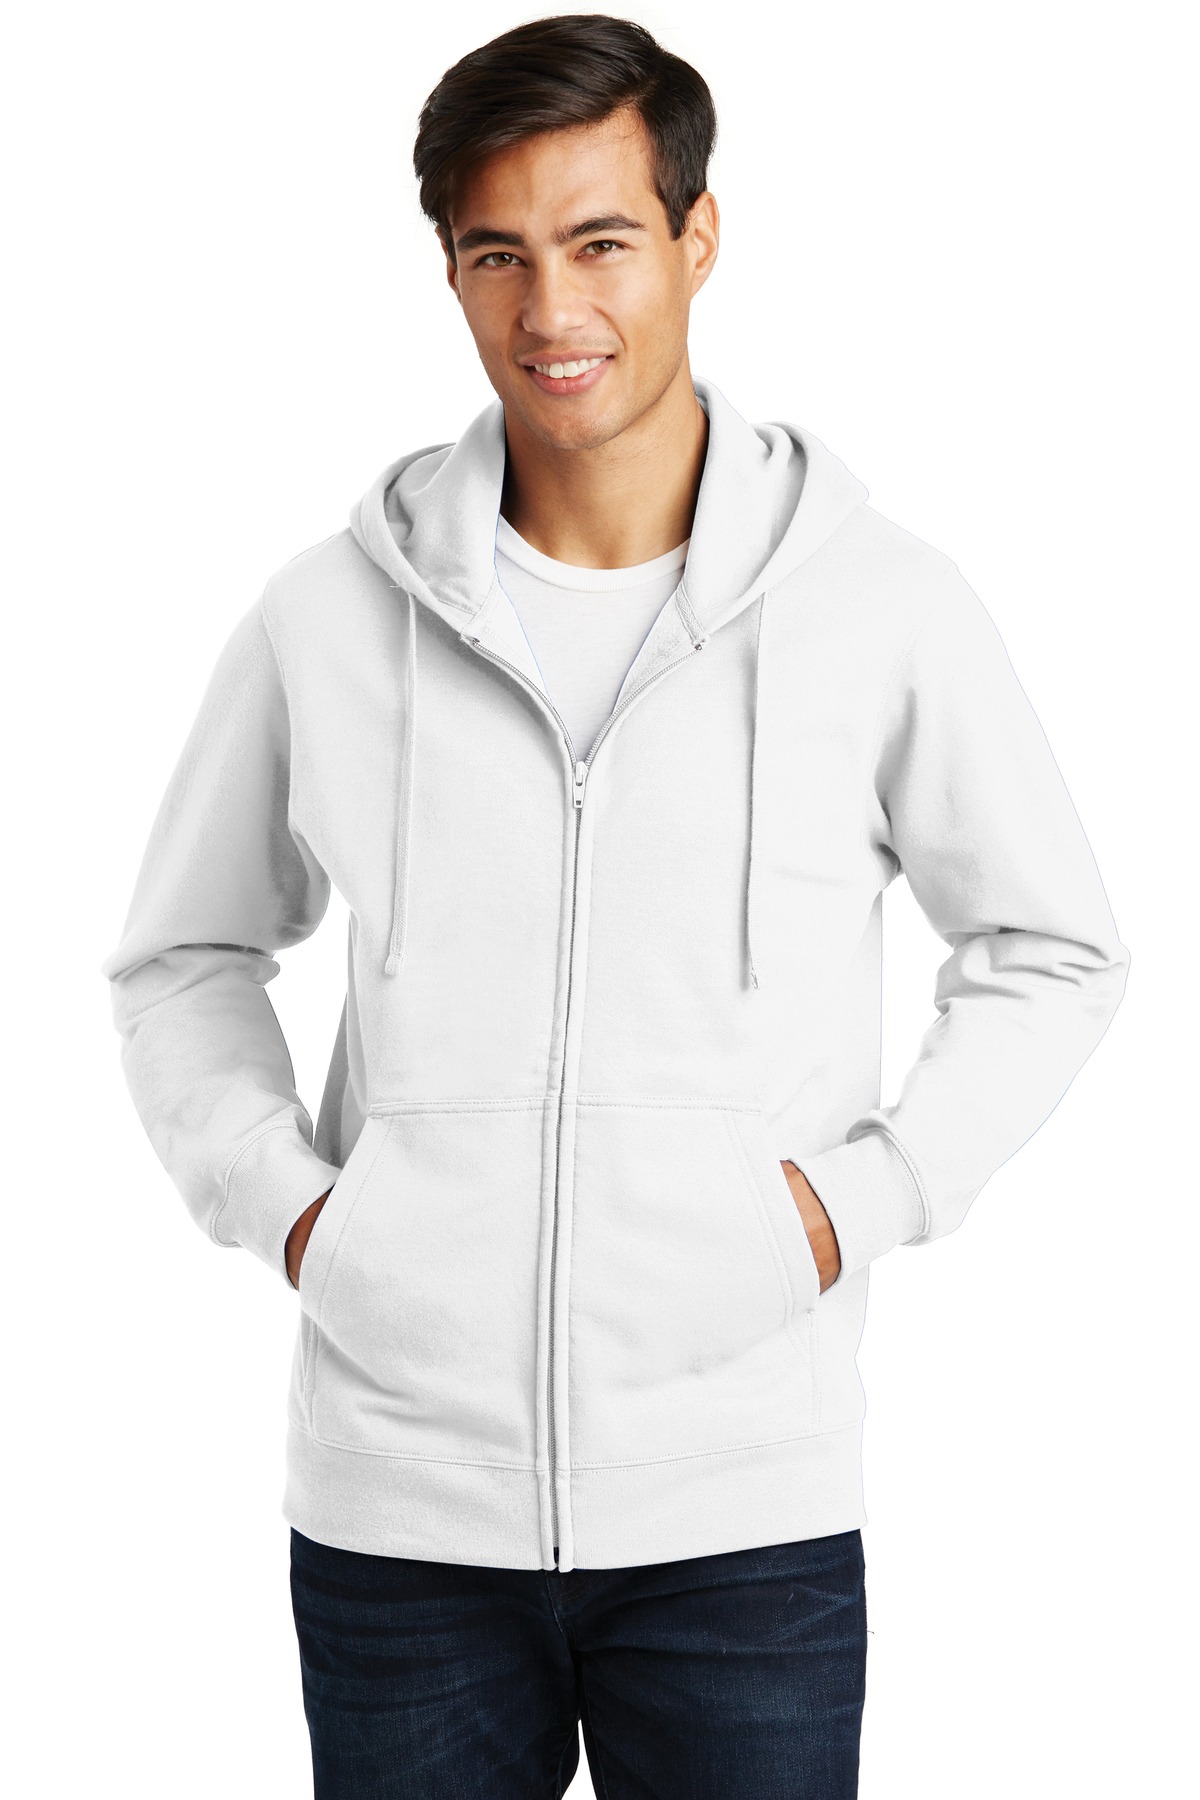 Port & Company Fan Favorite Fleece Full-Zip Hooded Sweatshirt-